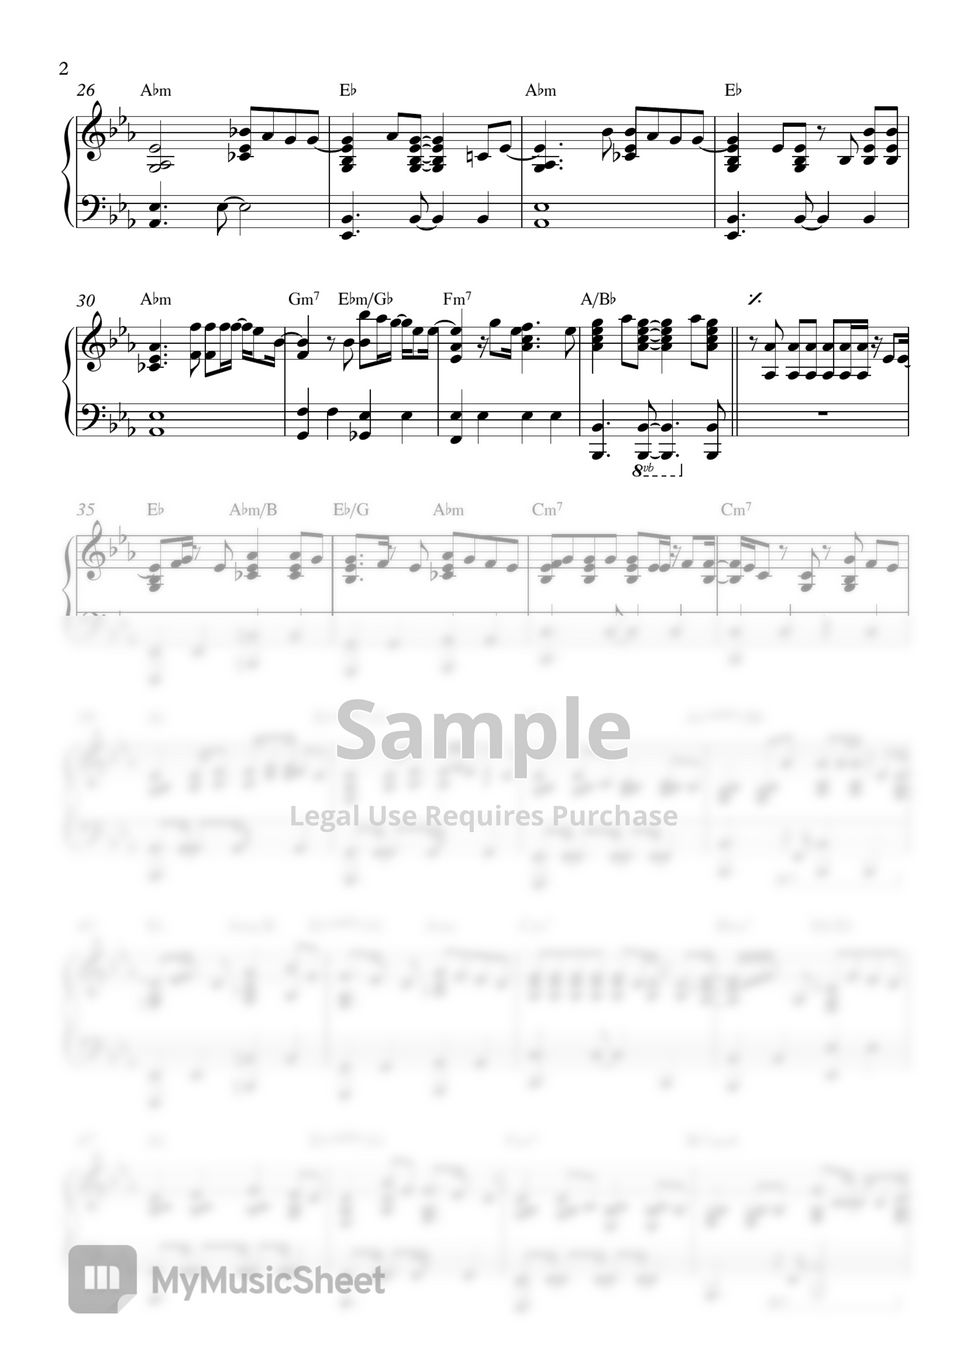 DAY6 - 놓아 놓아 놓아 (피아노 Ver.) by 피아노 트립